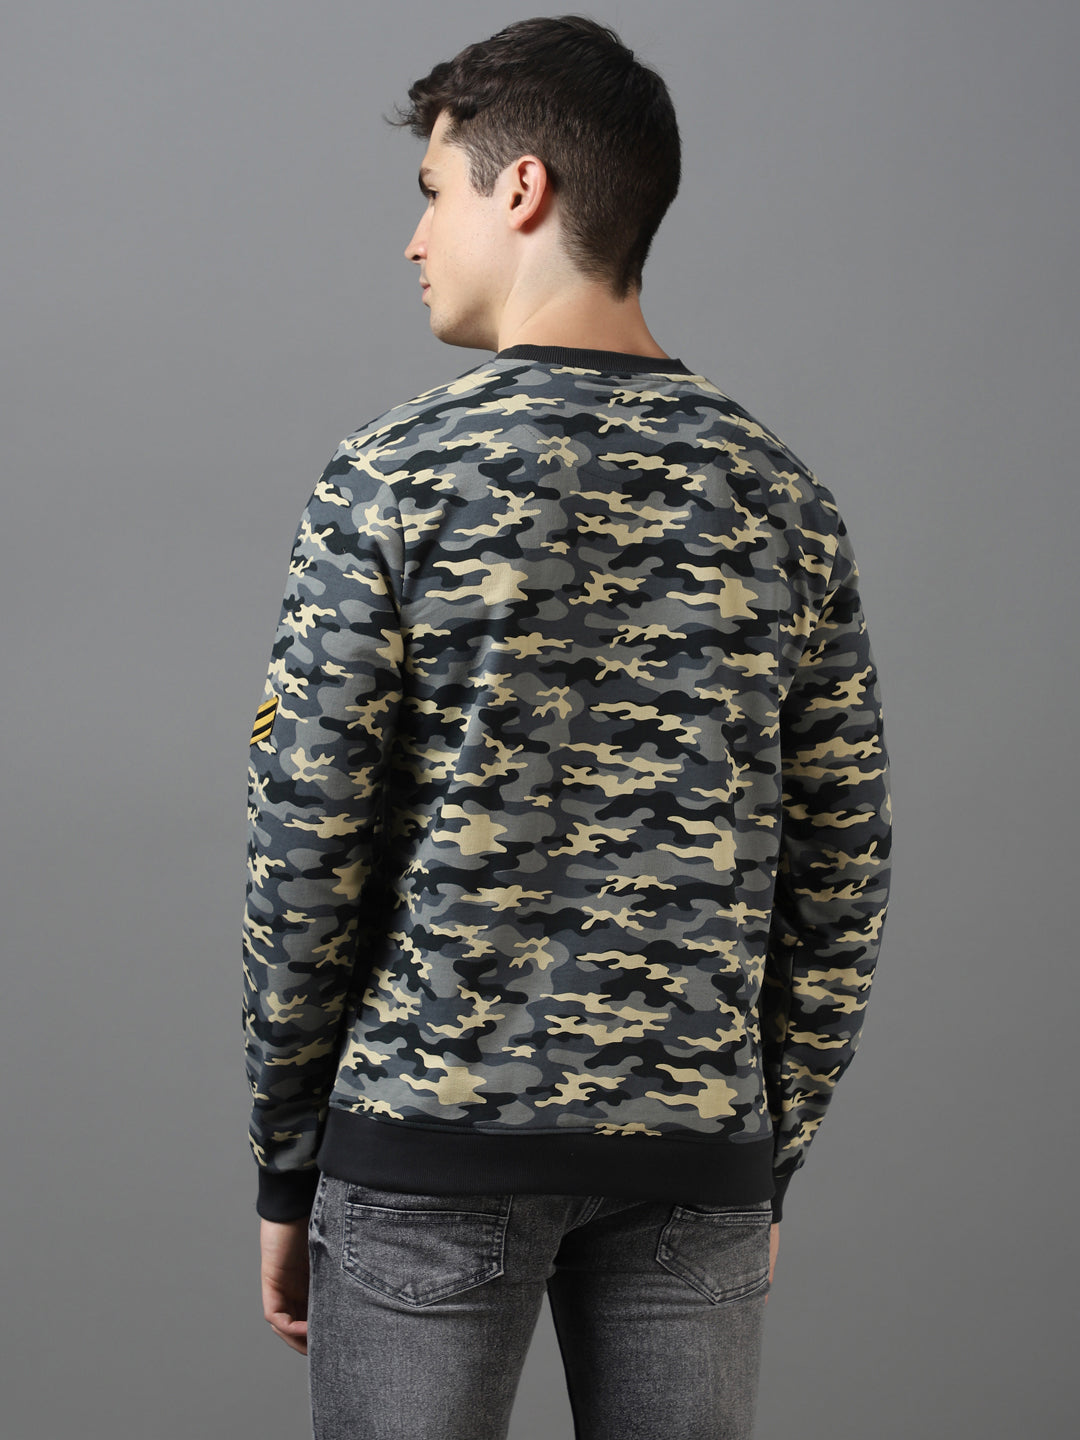 Men's Grey Cotton Camouflage Printed Round Neck Sweatshirt